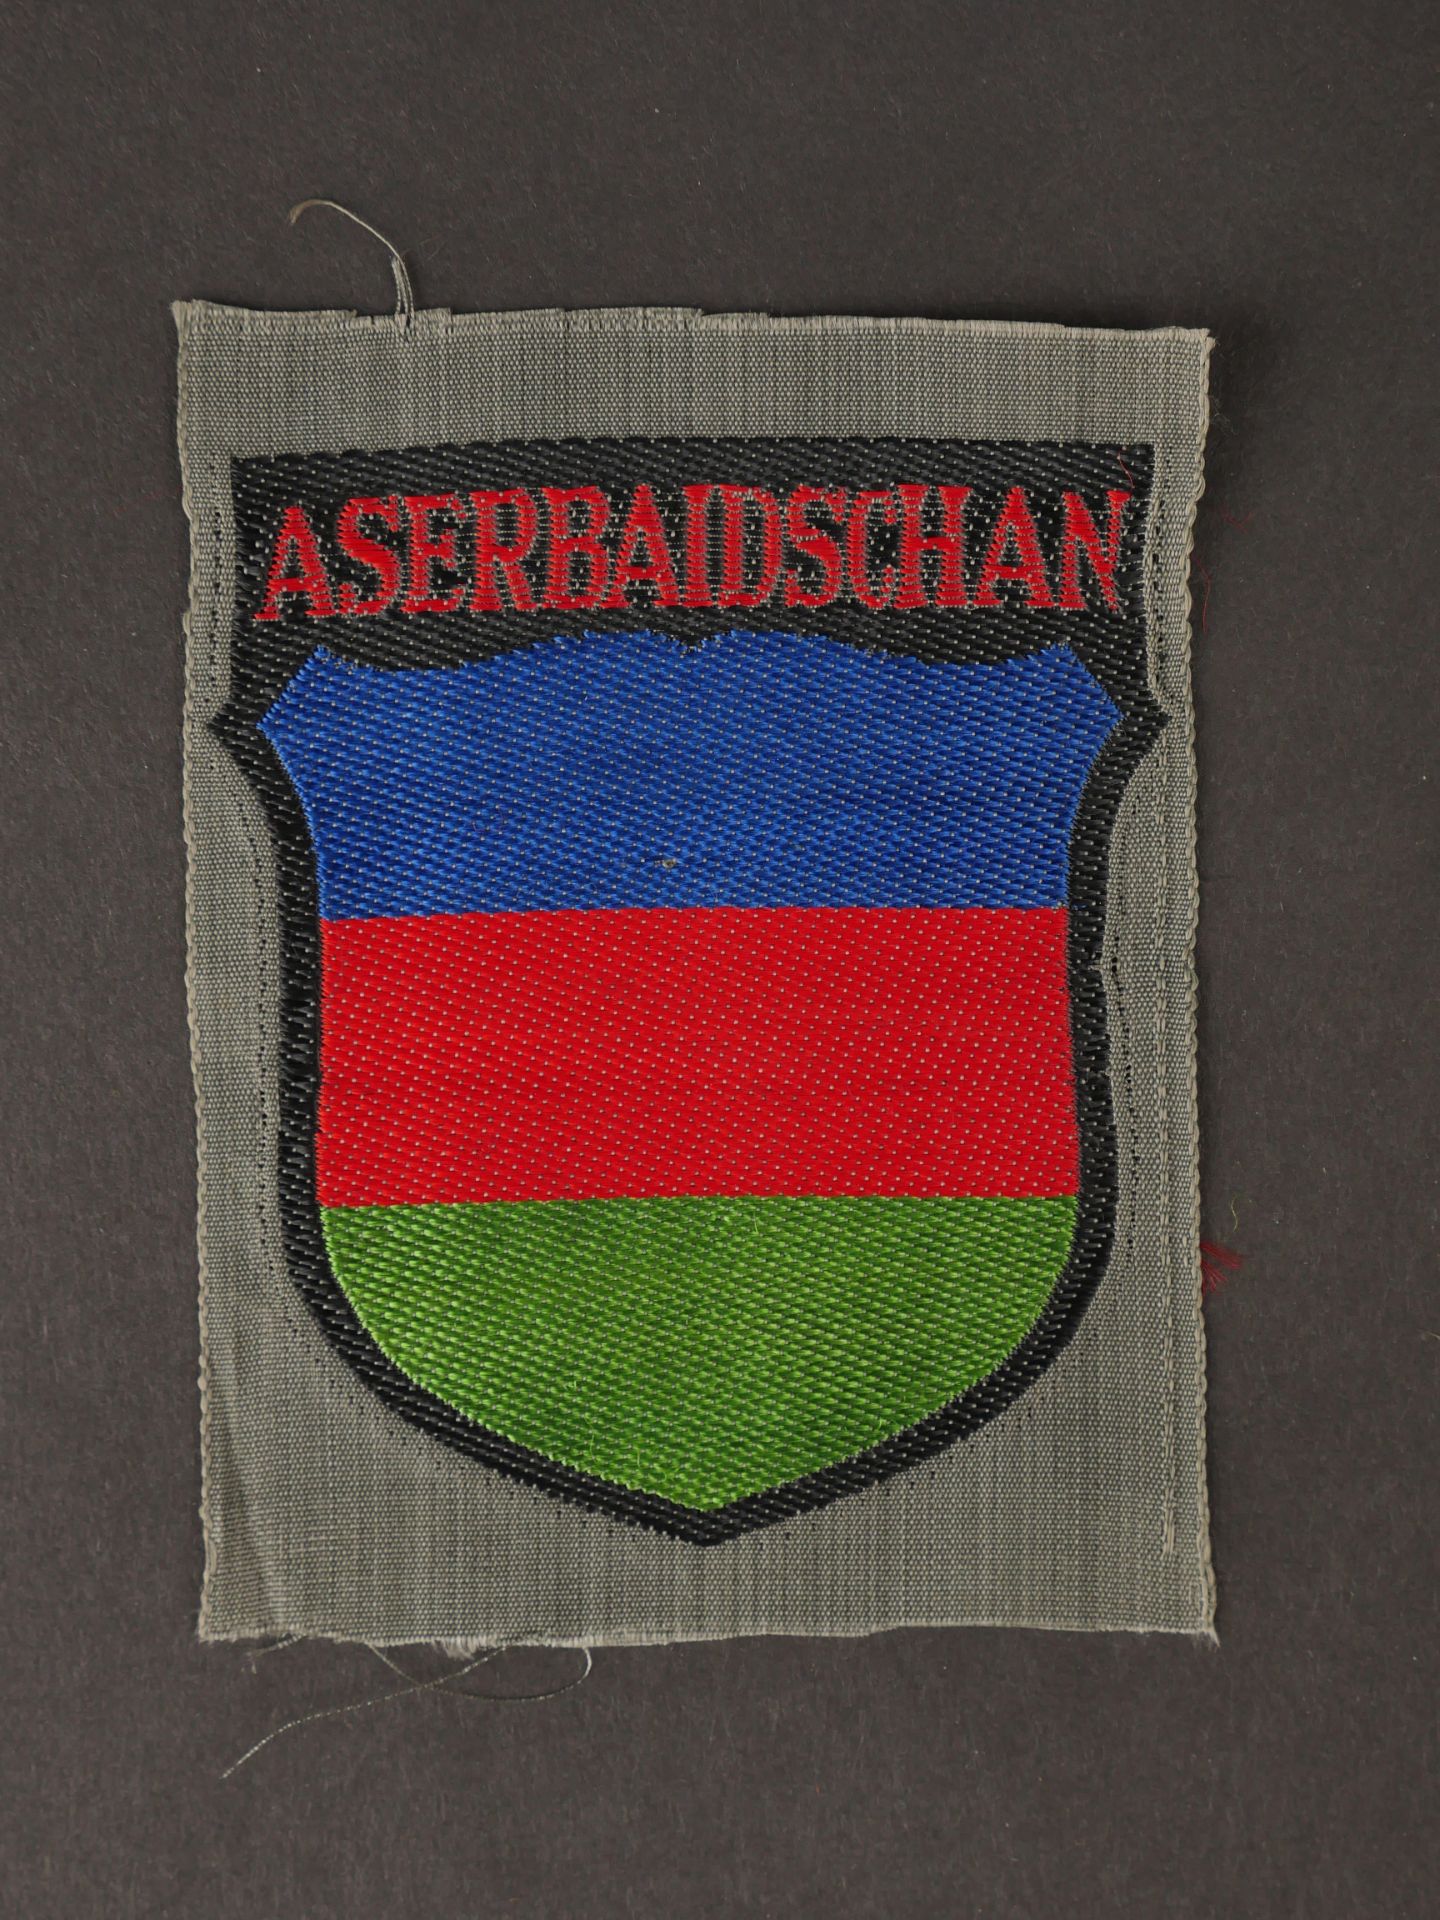 Insigne Aserbaidschan. nsignia Aserbaidschan. 